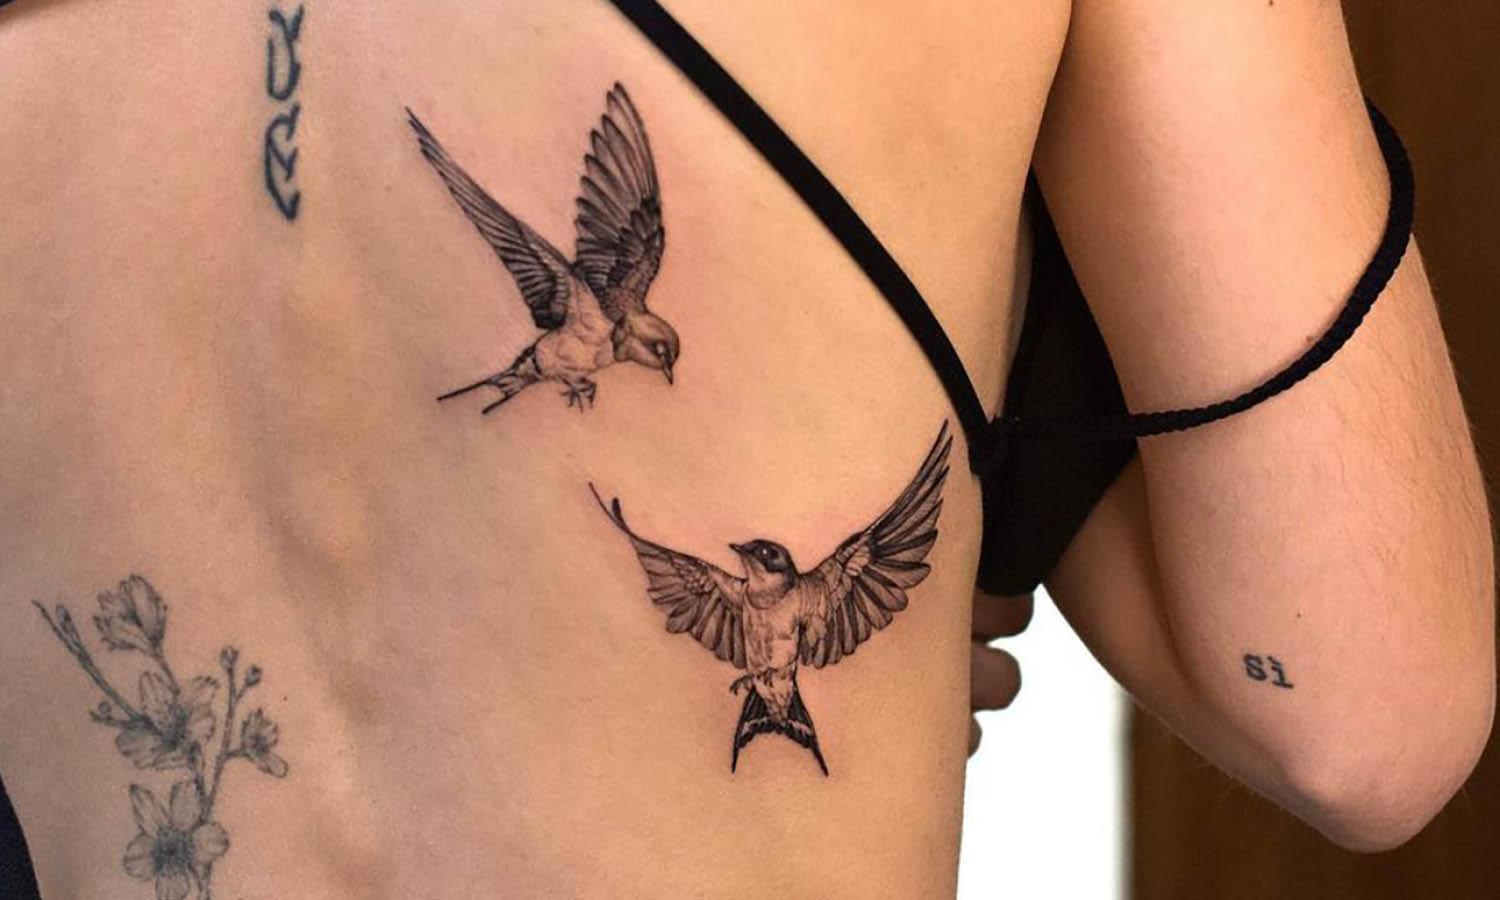 Bird Tattoo Design Ideas For Women